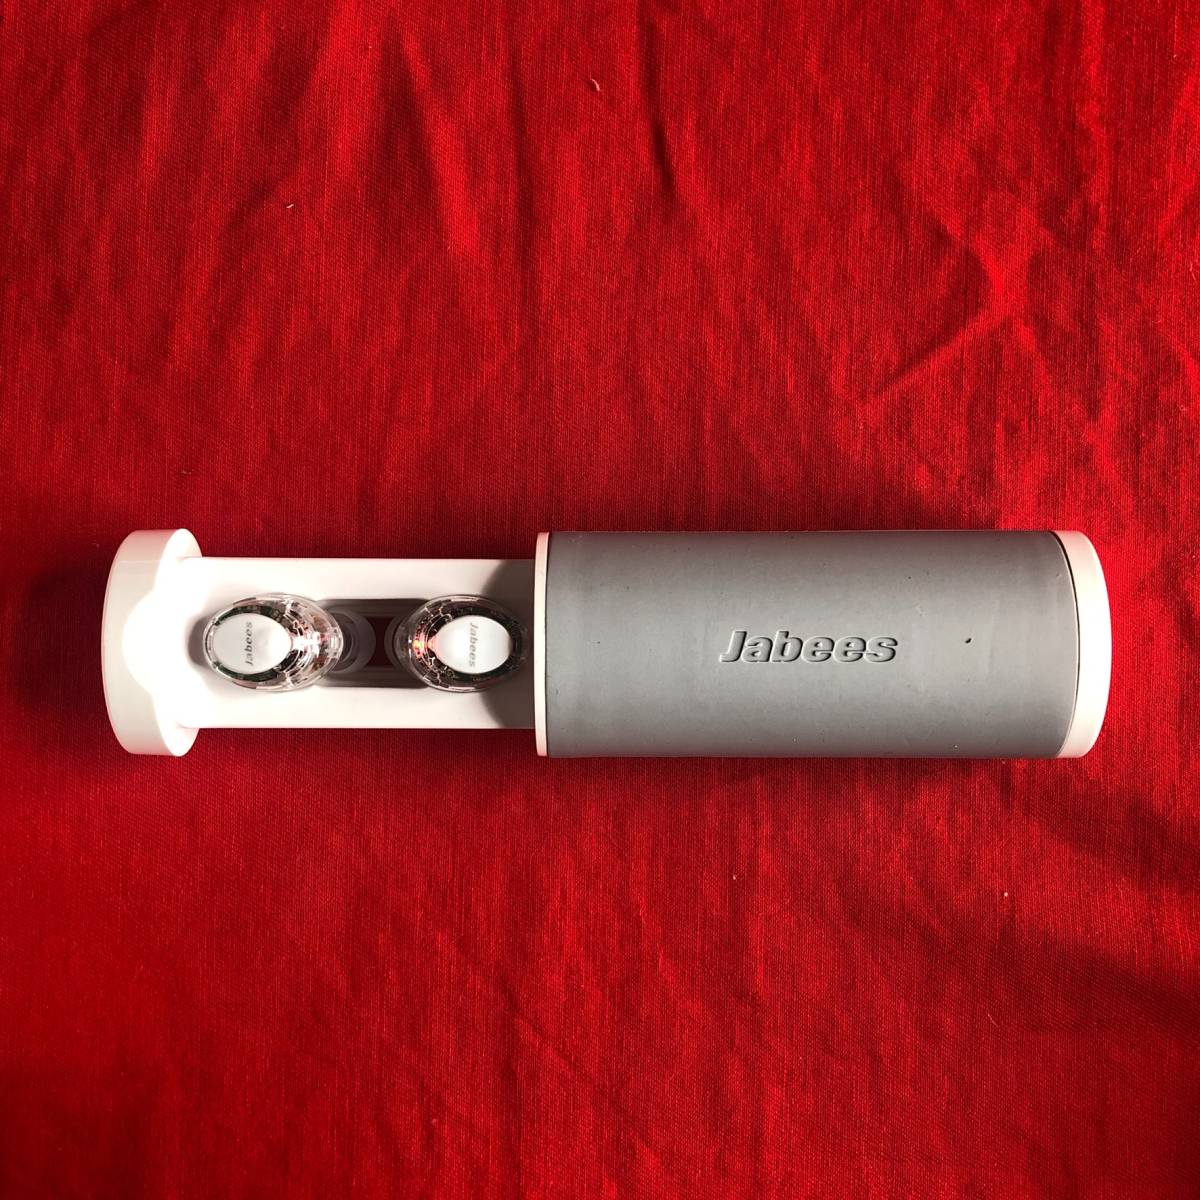 【2台とも新品未使用品】ワイヤレスイヤホン Jabees Firefly クリスタルクリア Bluetooth5.0_画像3